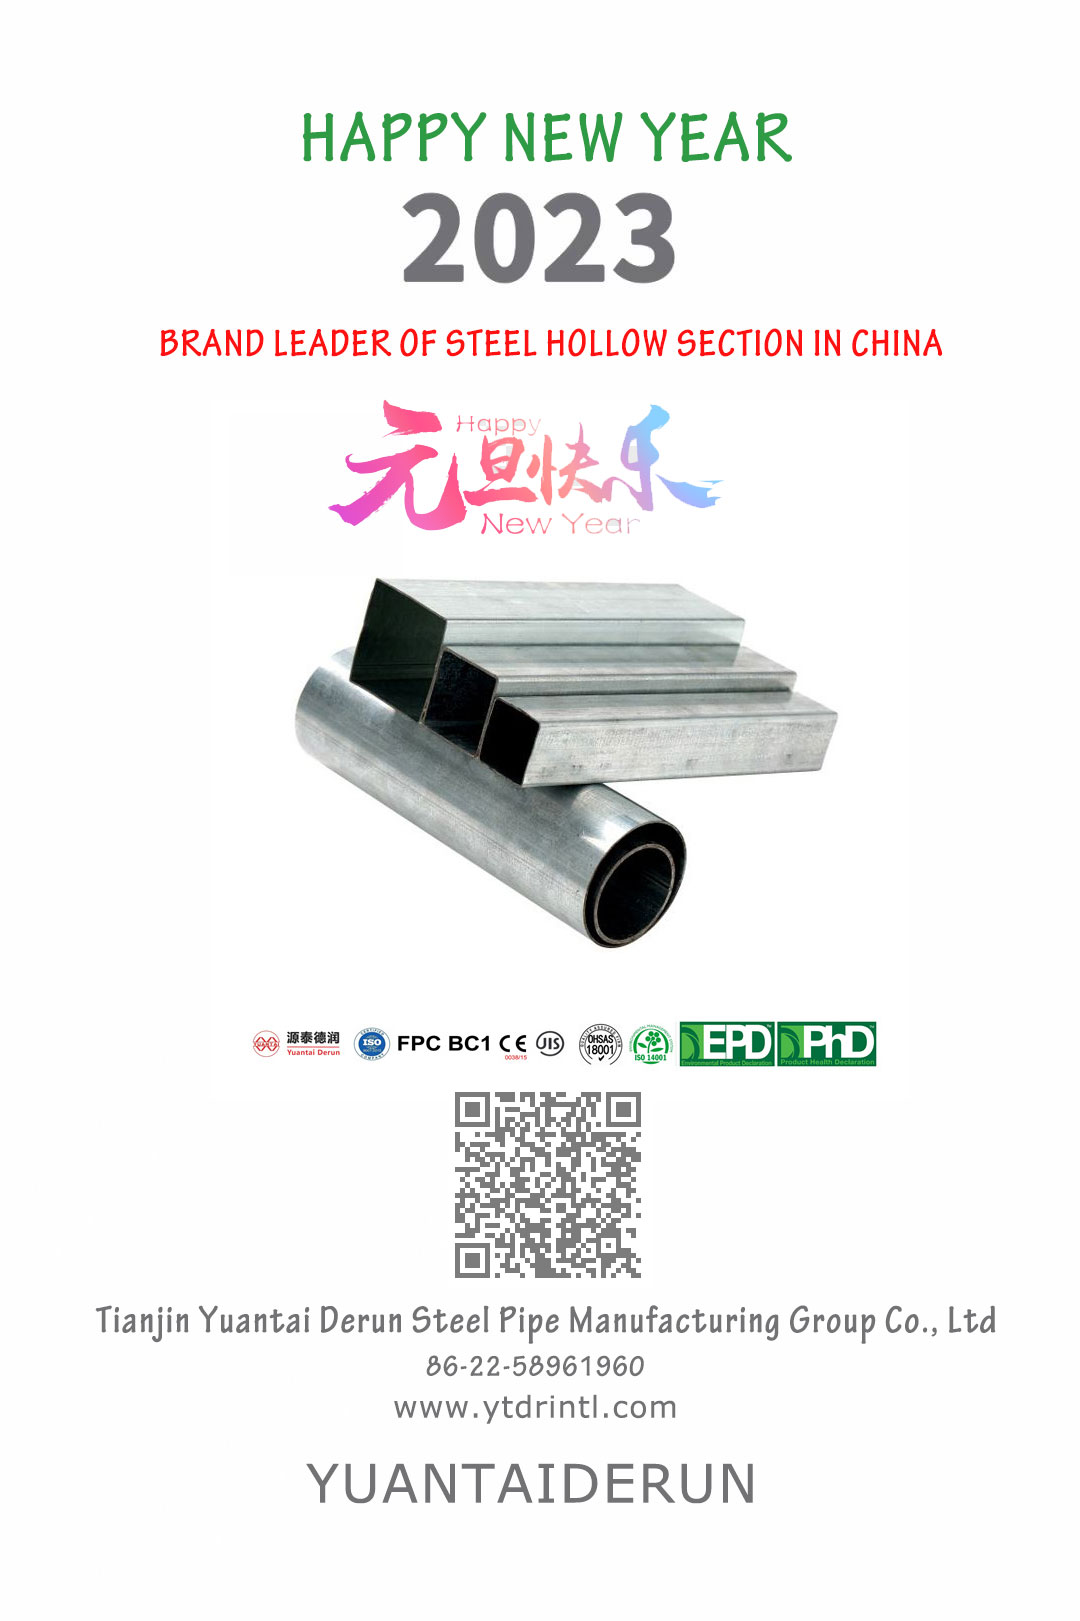 Feliz año nuevo: marca líder de perfiles huecos de acero en China